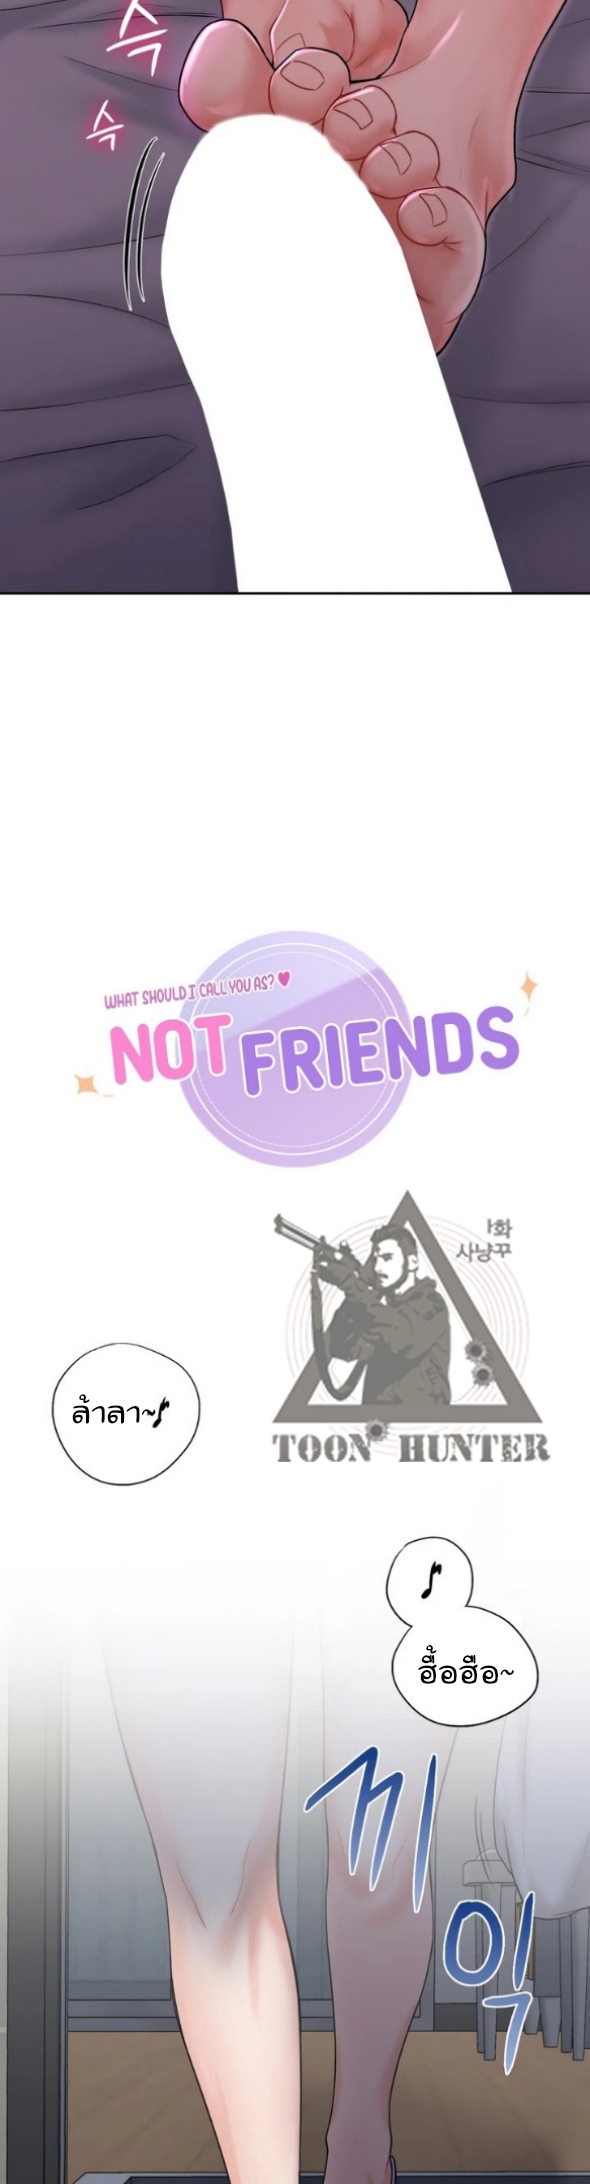 Not a friend 8 (12)